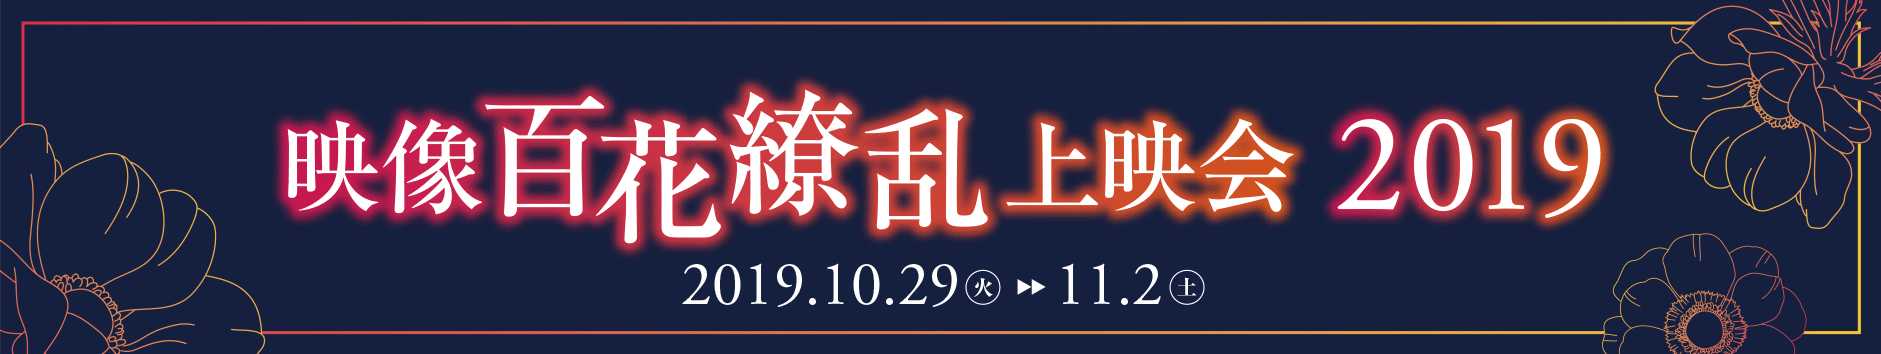 映像百花繚乱上映会 2019　2019.10.29（火）→11.2（土）